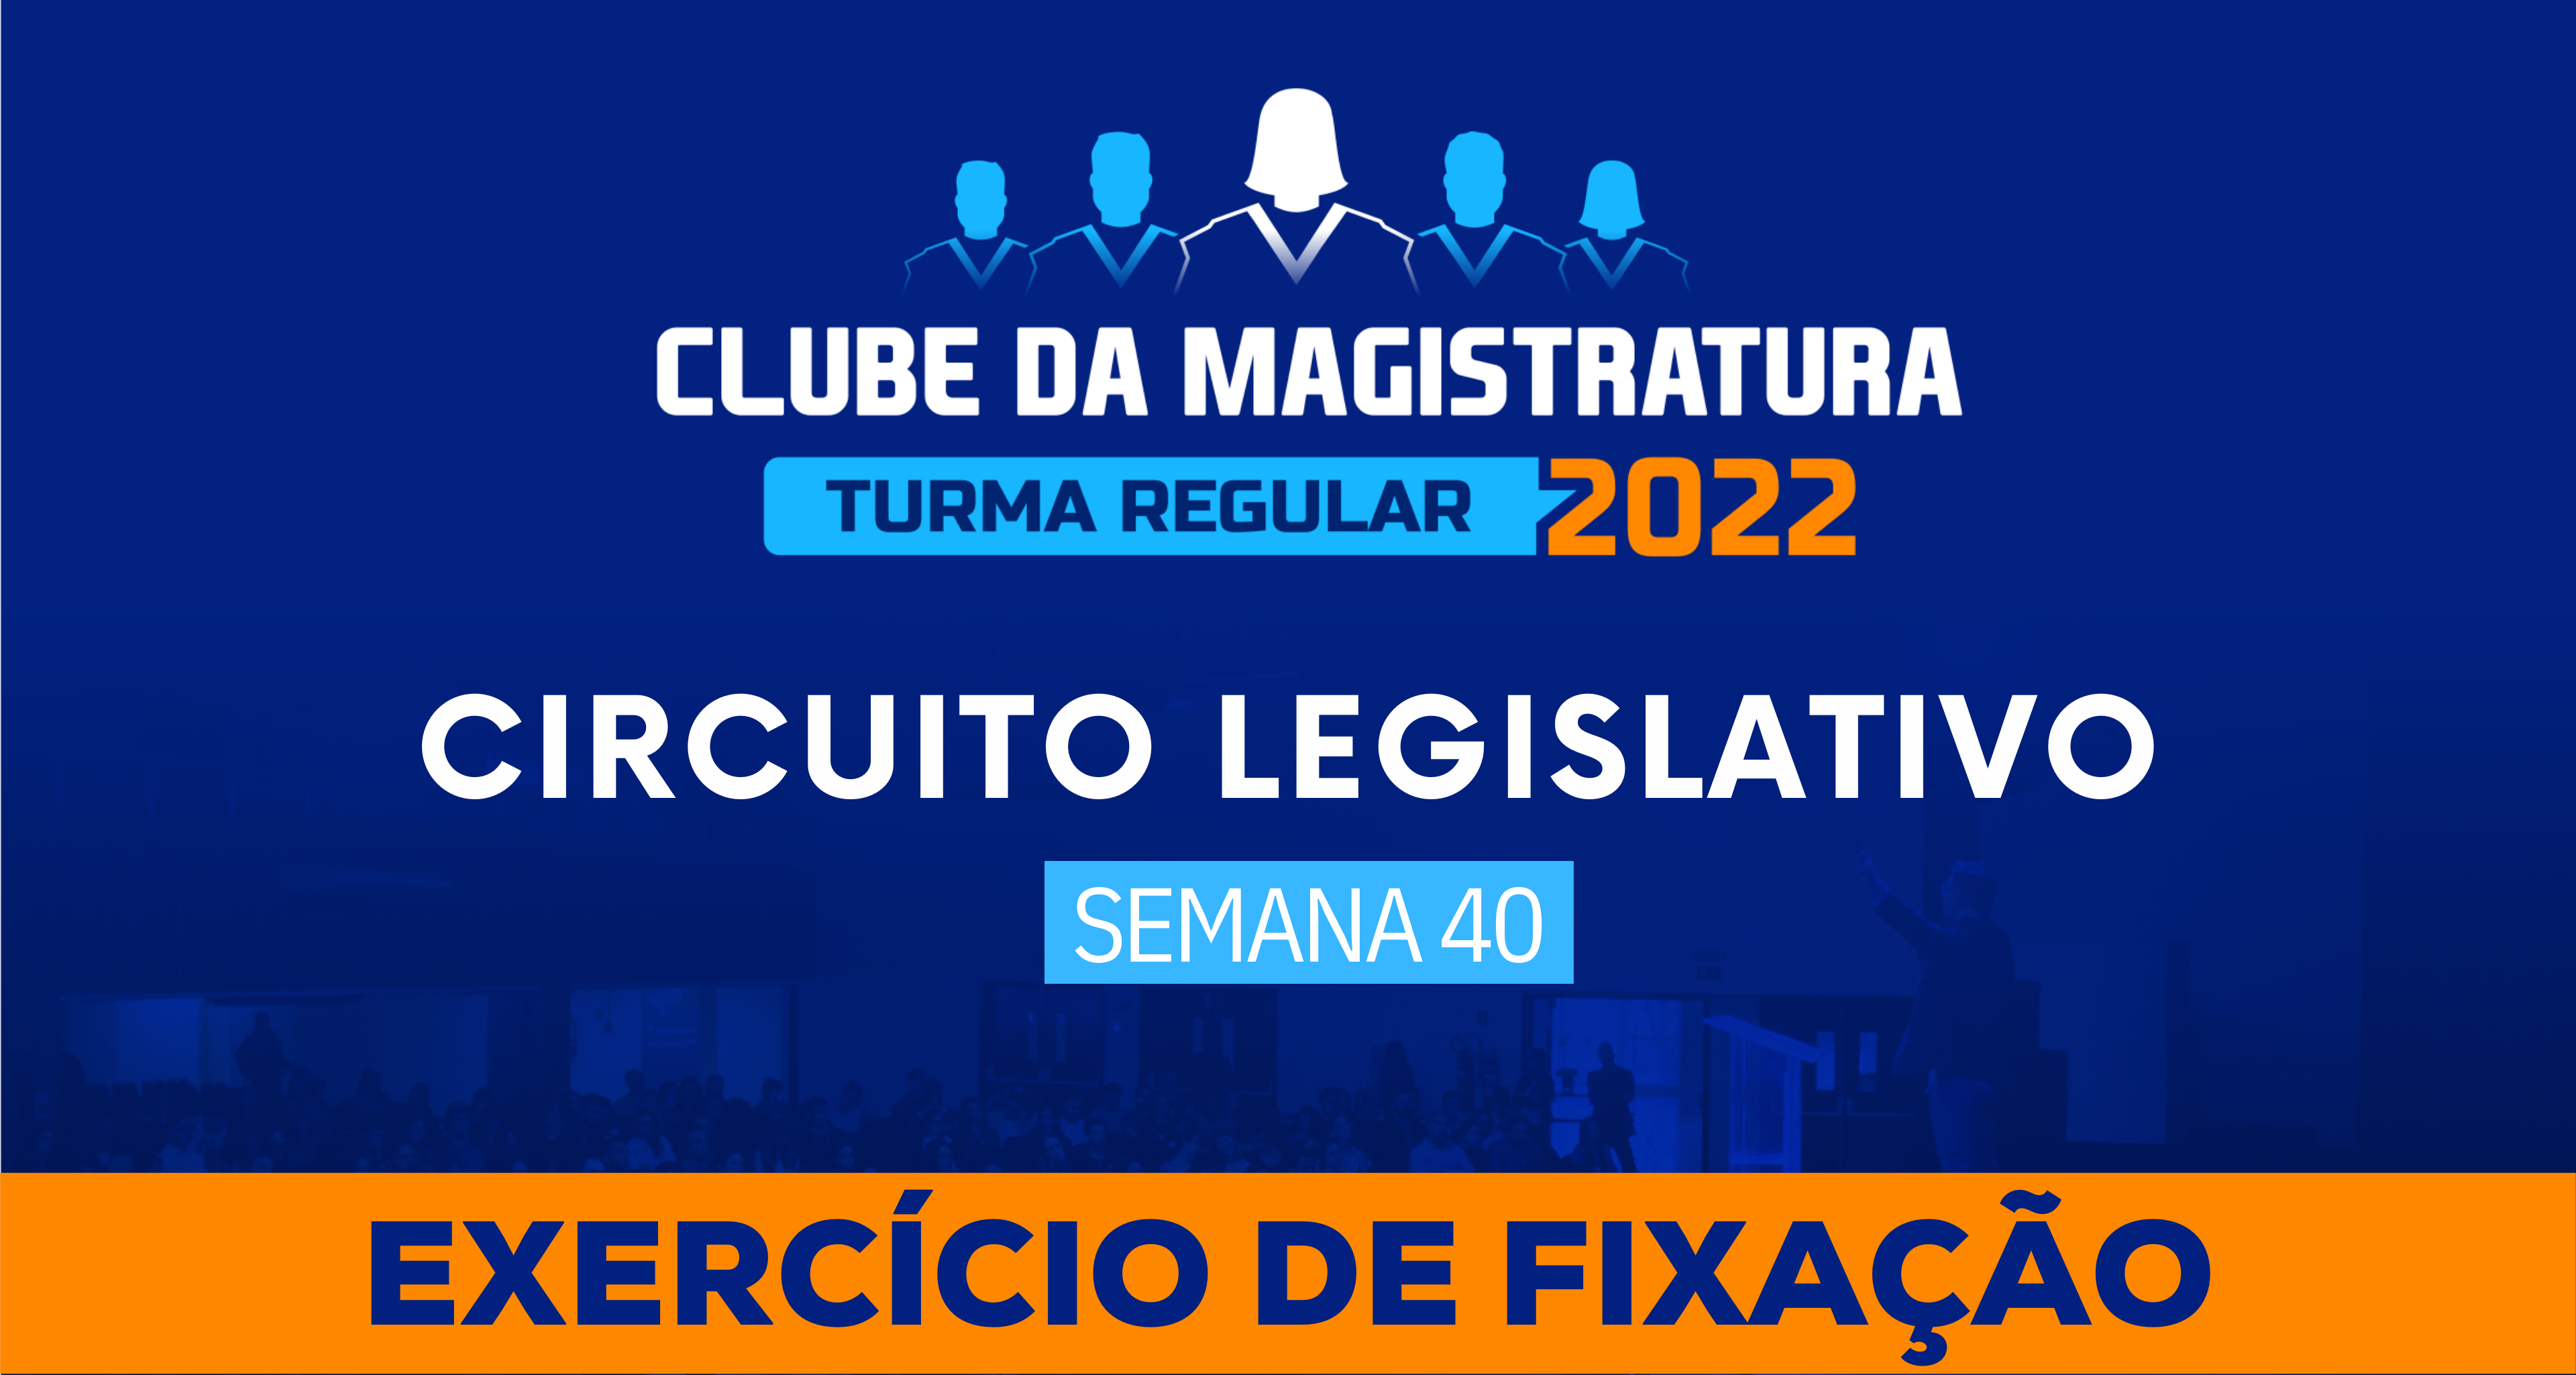 Circuito Legislativo 2022.1 (Clube da Magistratura - Semana 40)